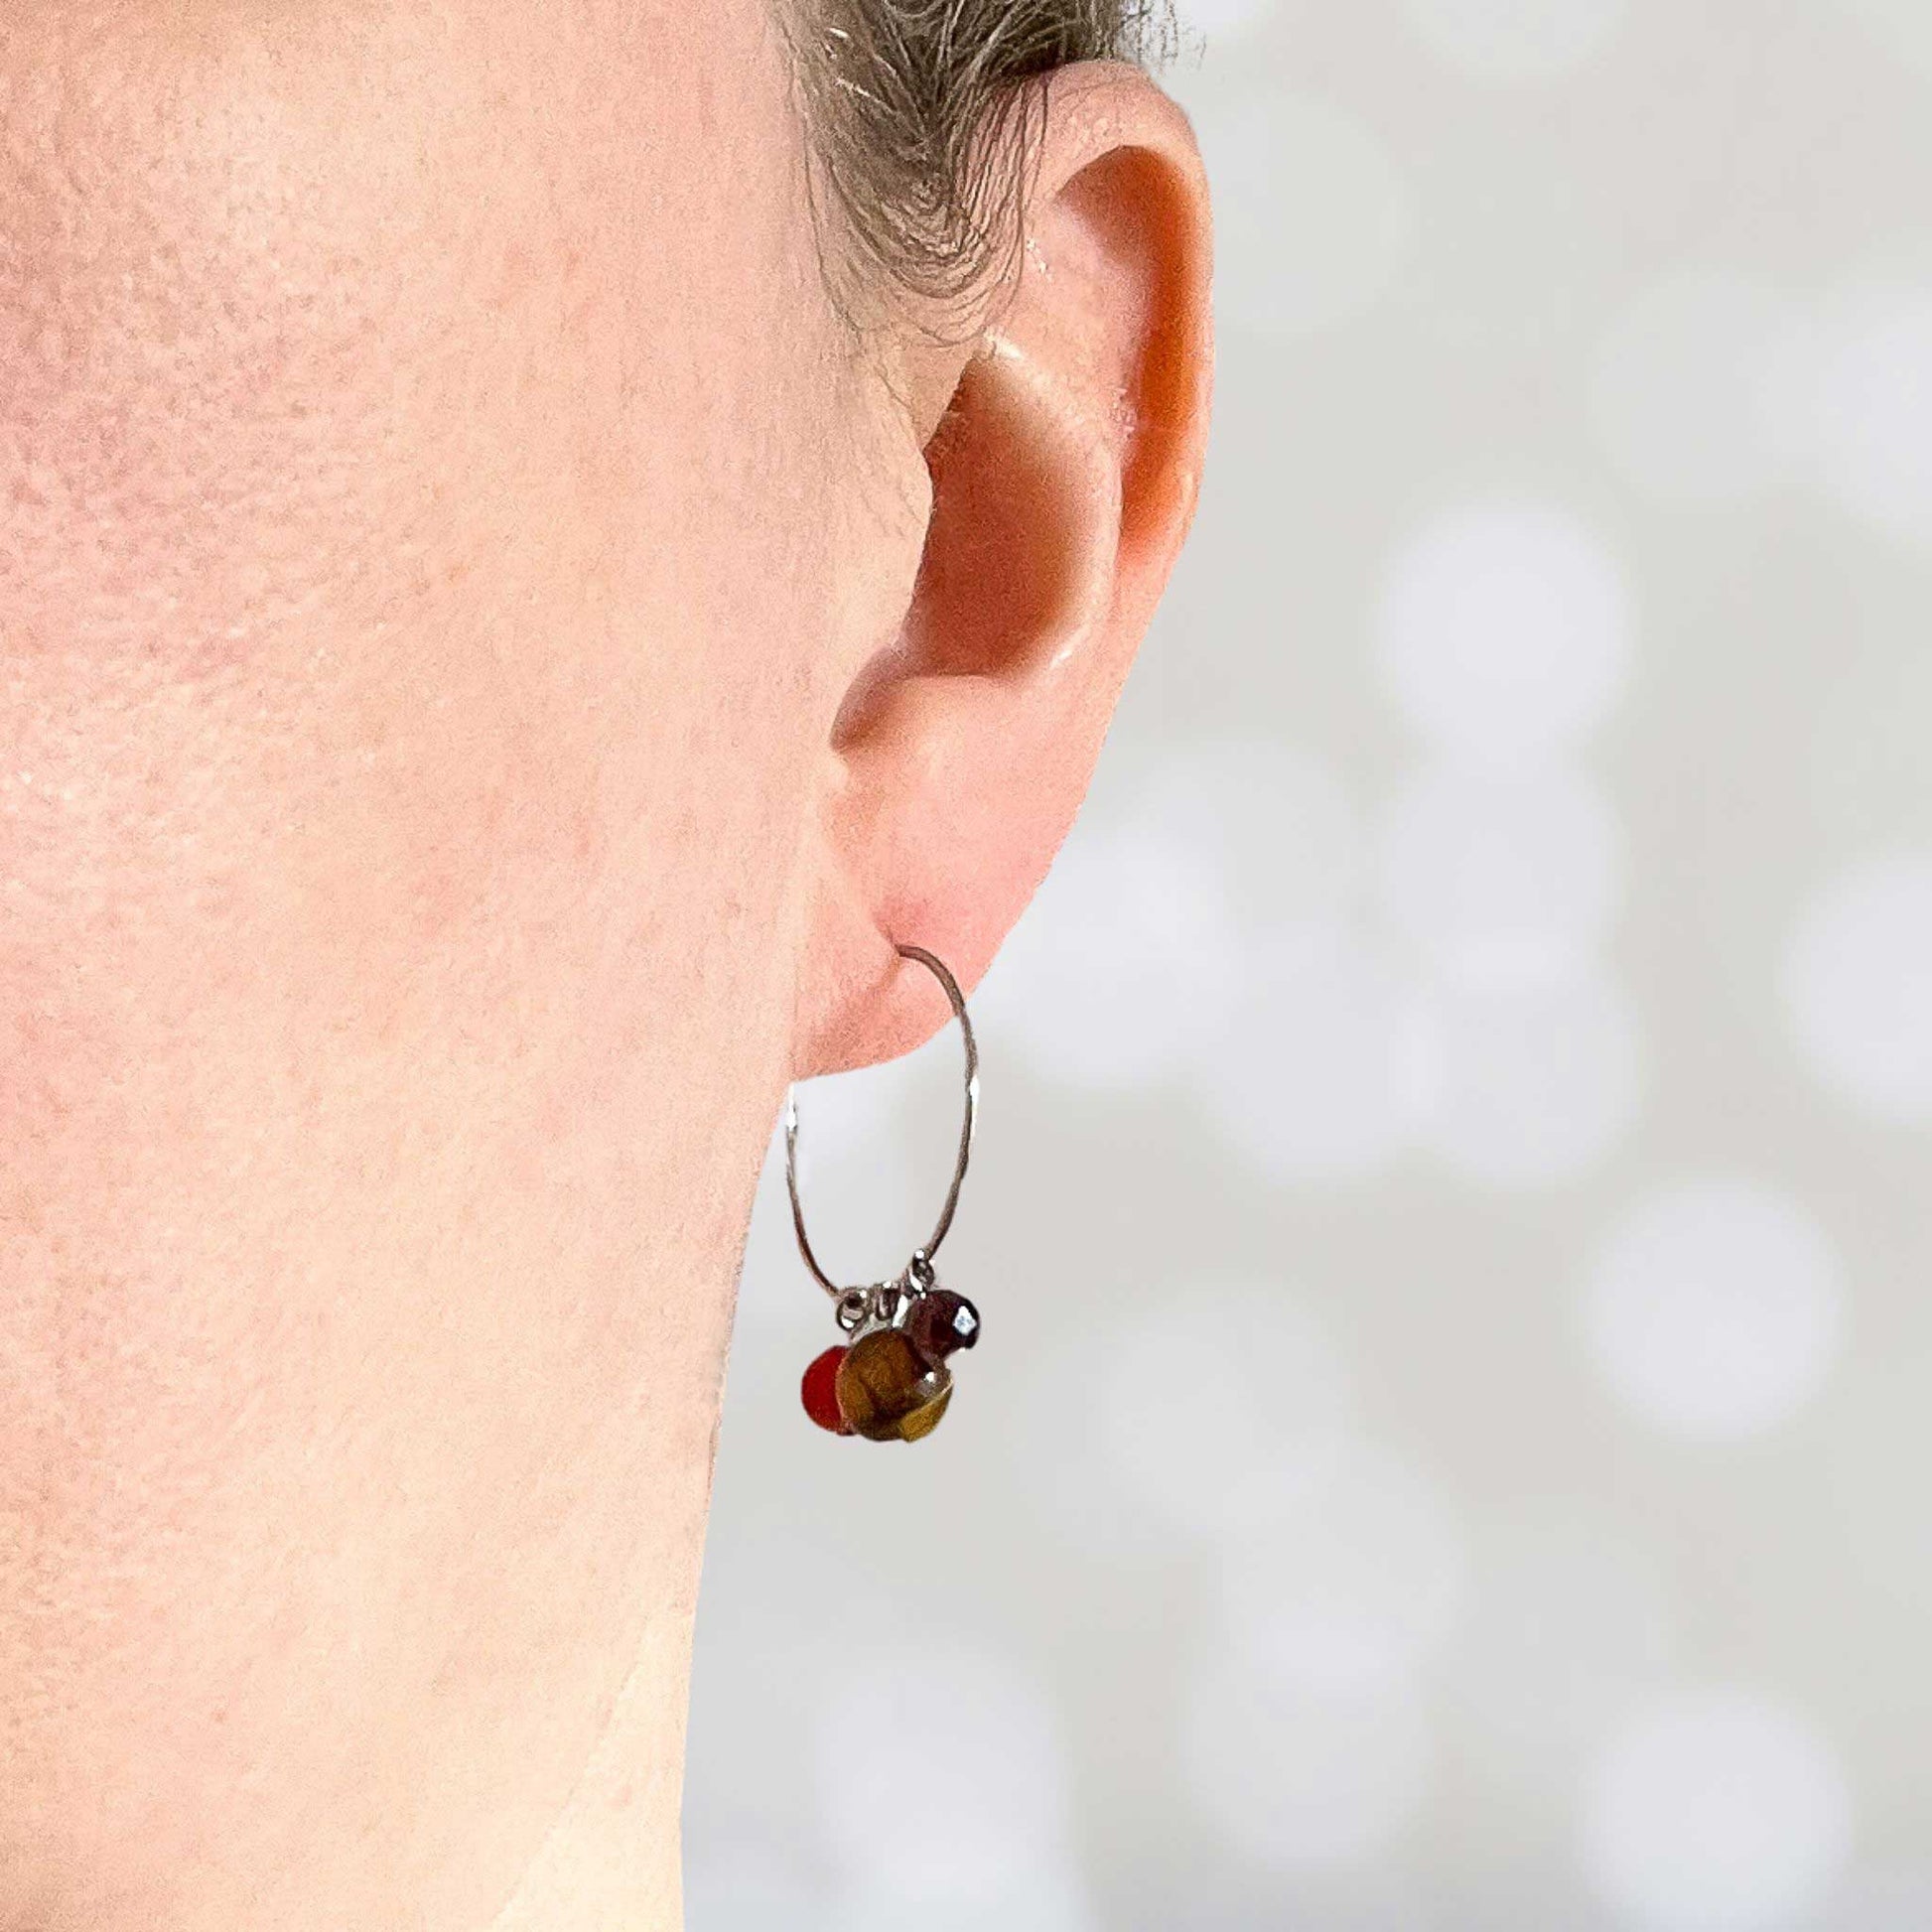 Women wearing dark gemstone hoop earring in earlobe